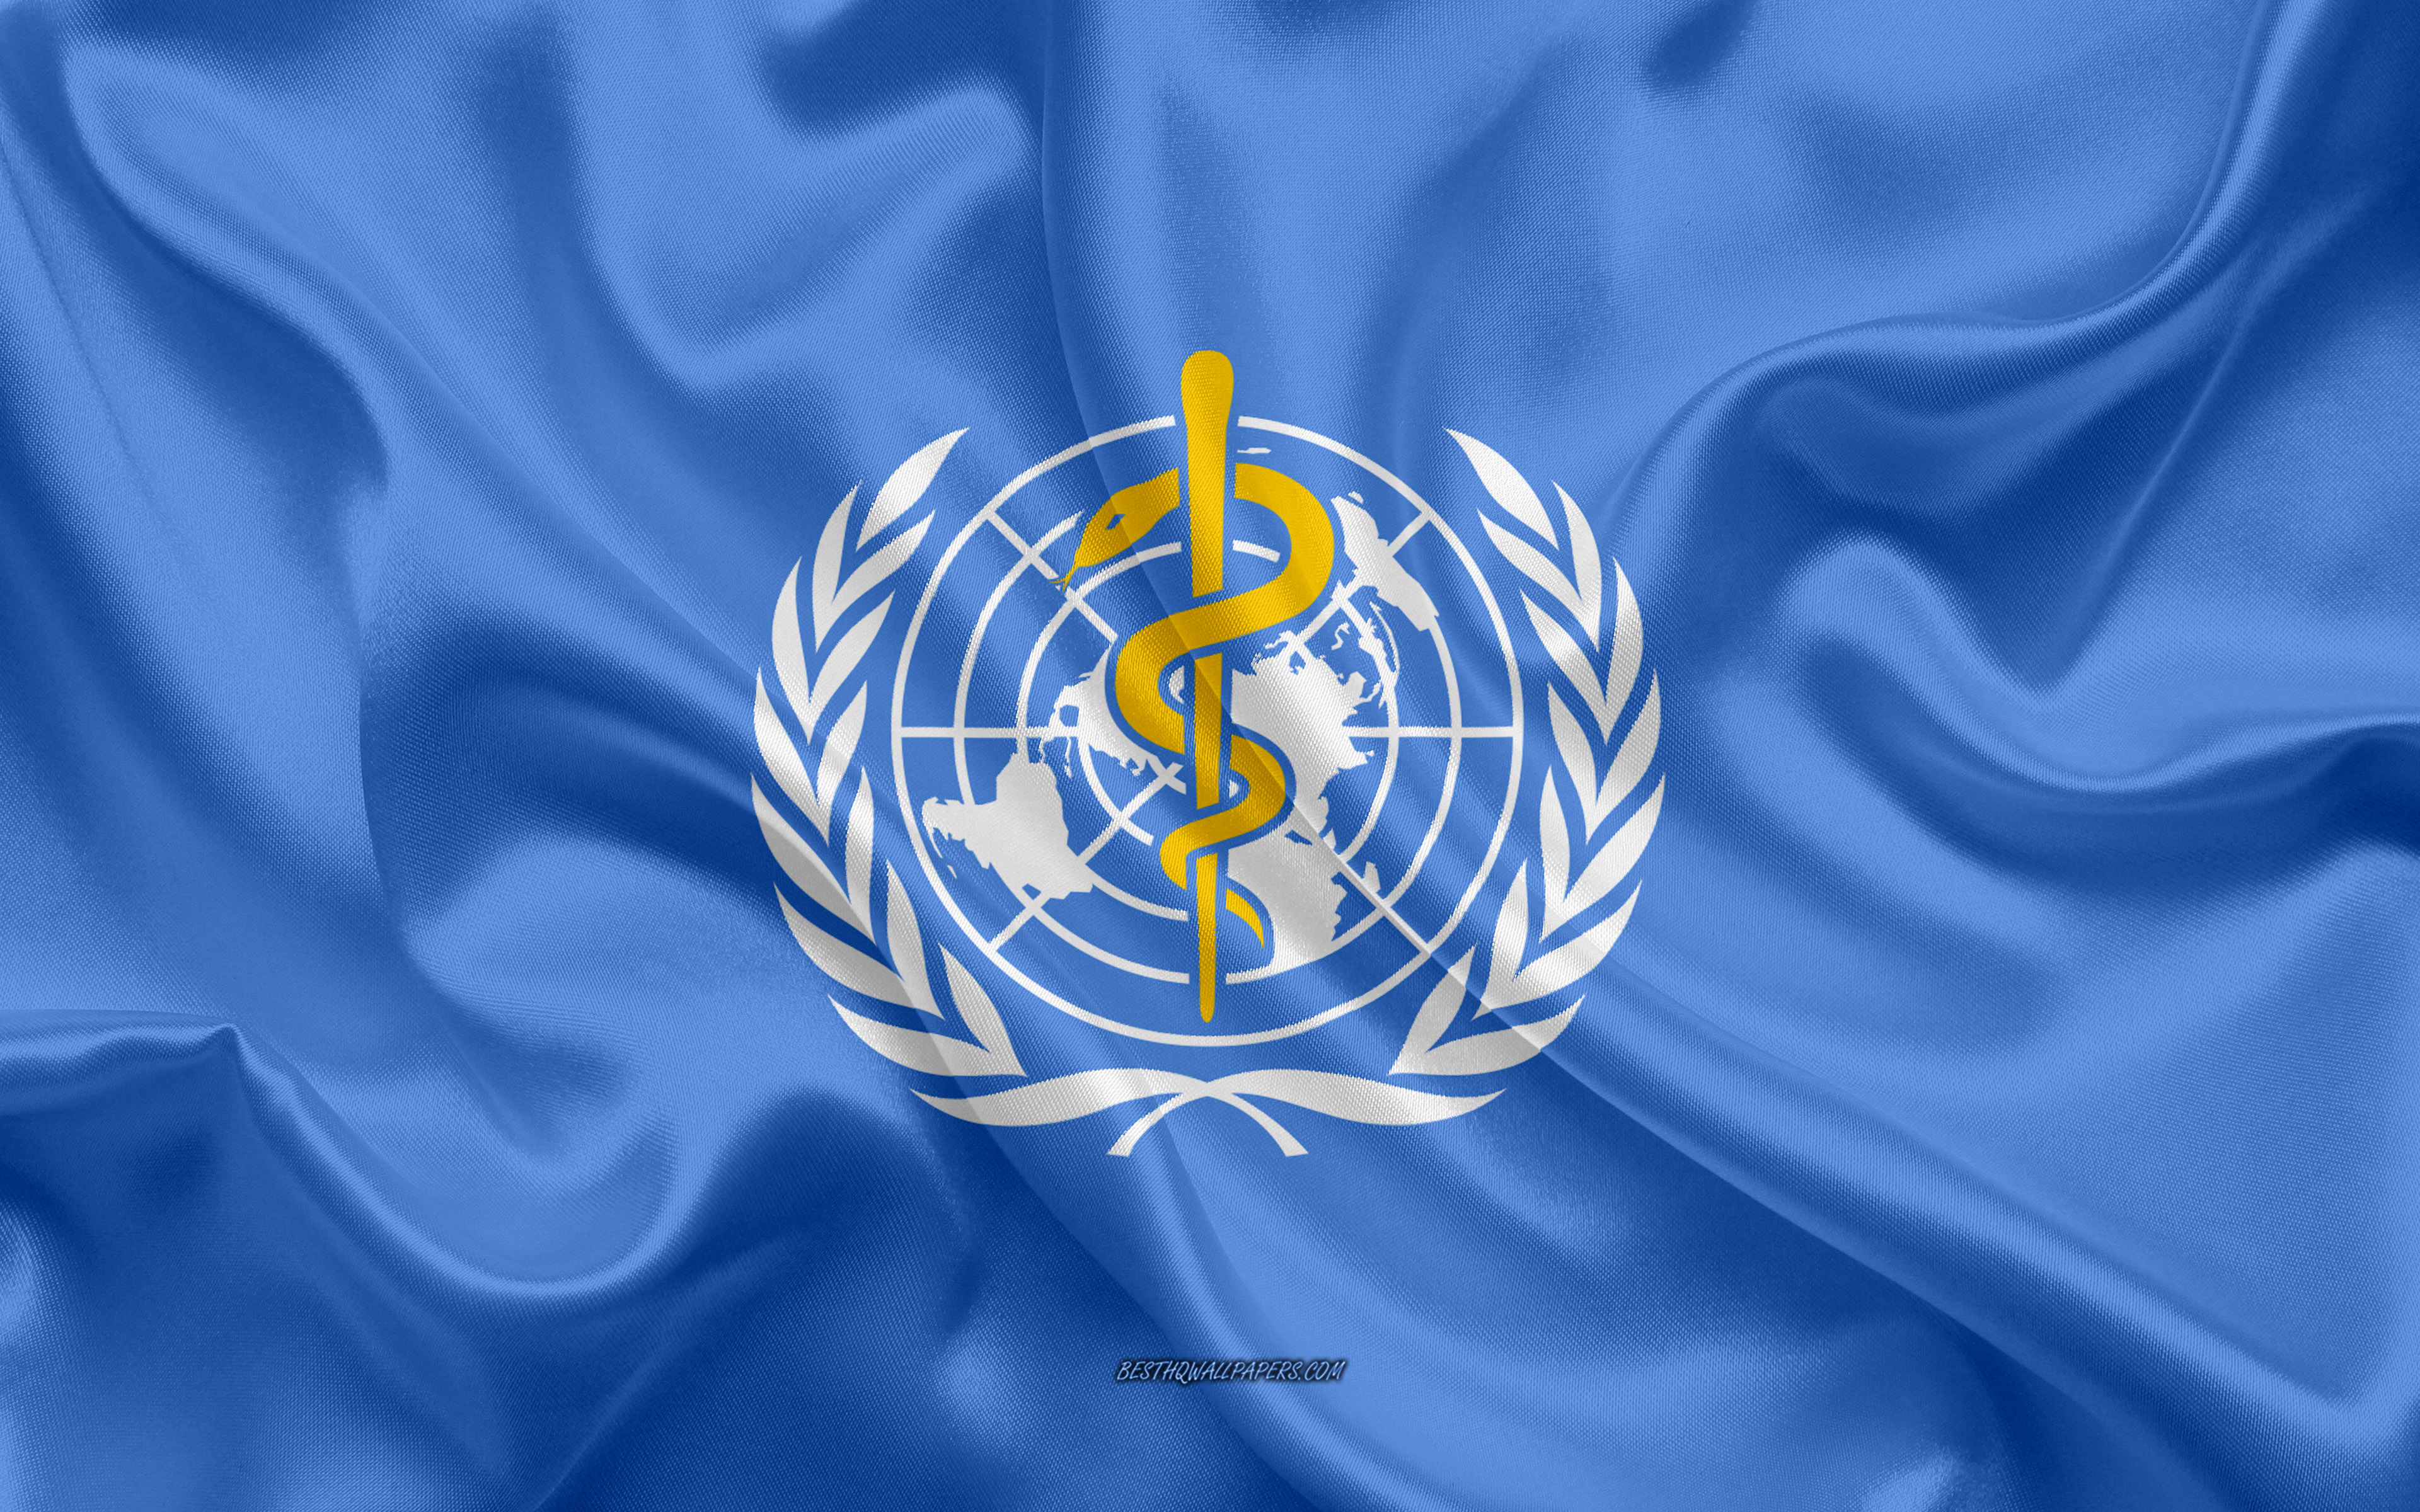 Всемирная организация здравоохранения в россии. Флаг всемирной организации здравоохранения. 3 Всемирная организация здравоохранения (воз). Воз ООН. Воз - Всемирная организация ООН.